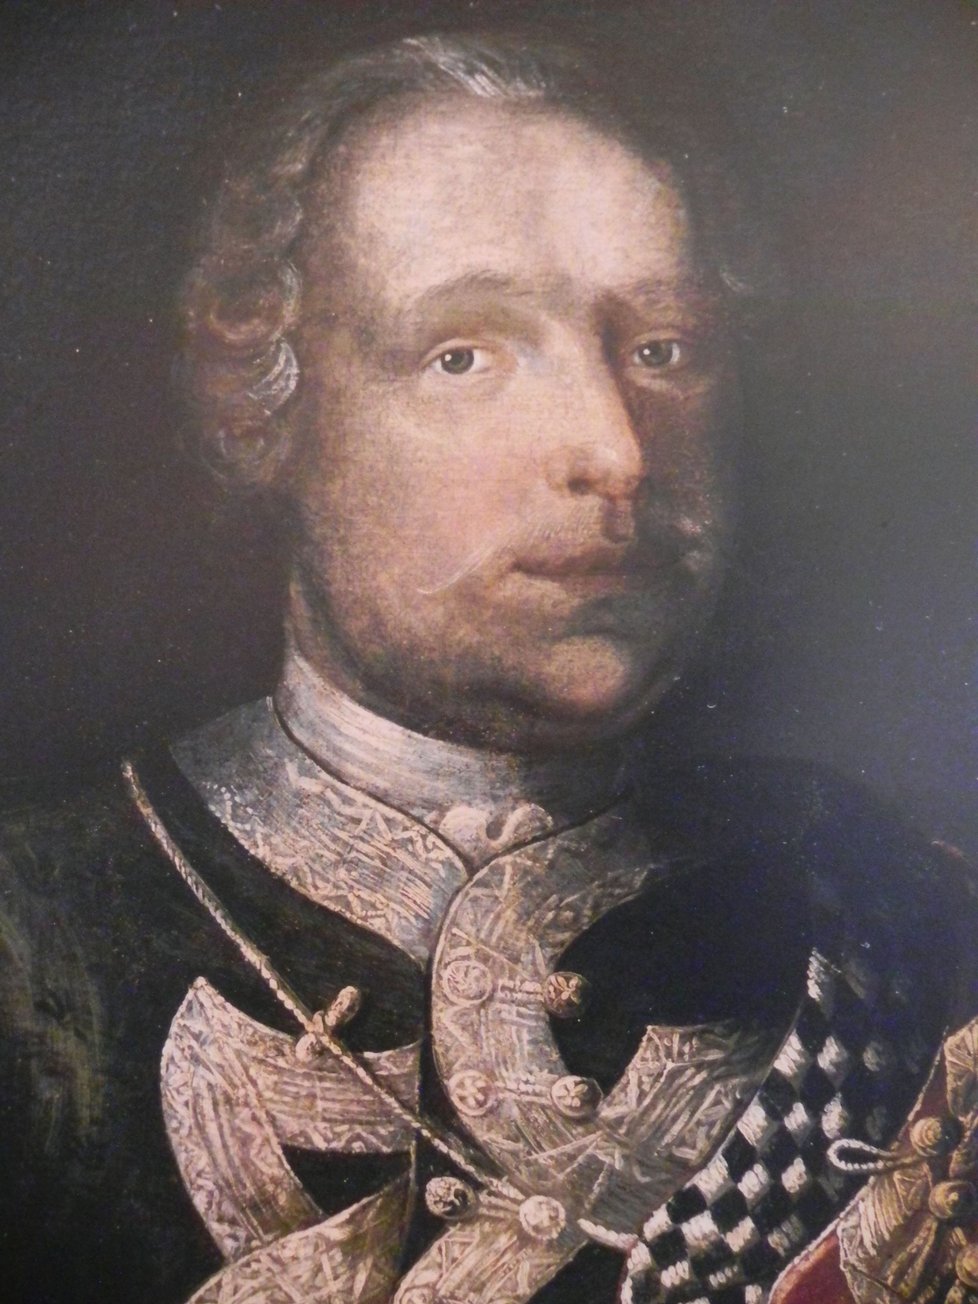 Dobový portrét barona Trencka před polovinou 18.století.